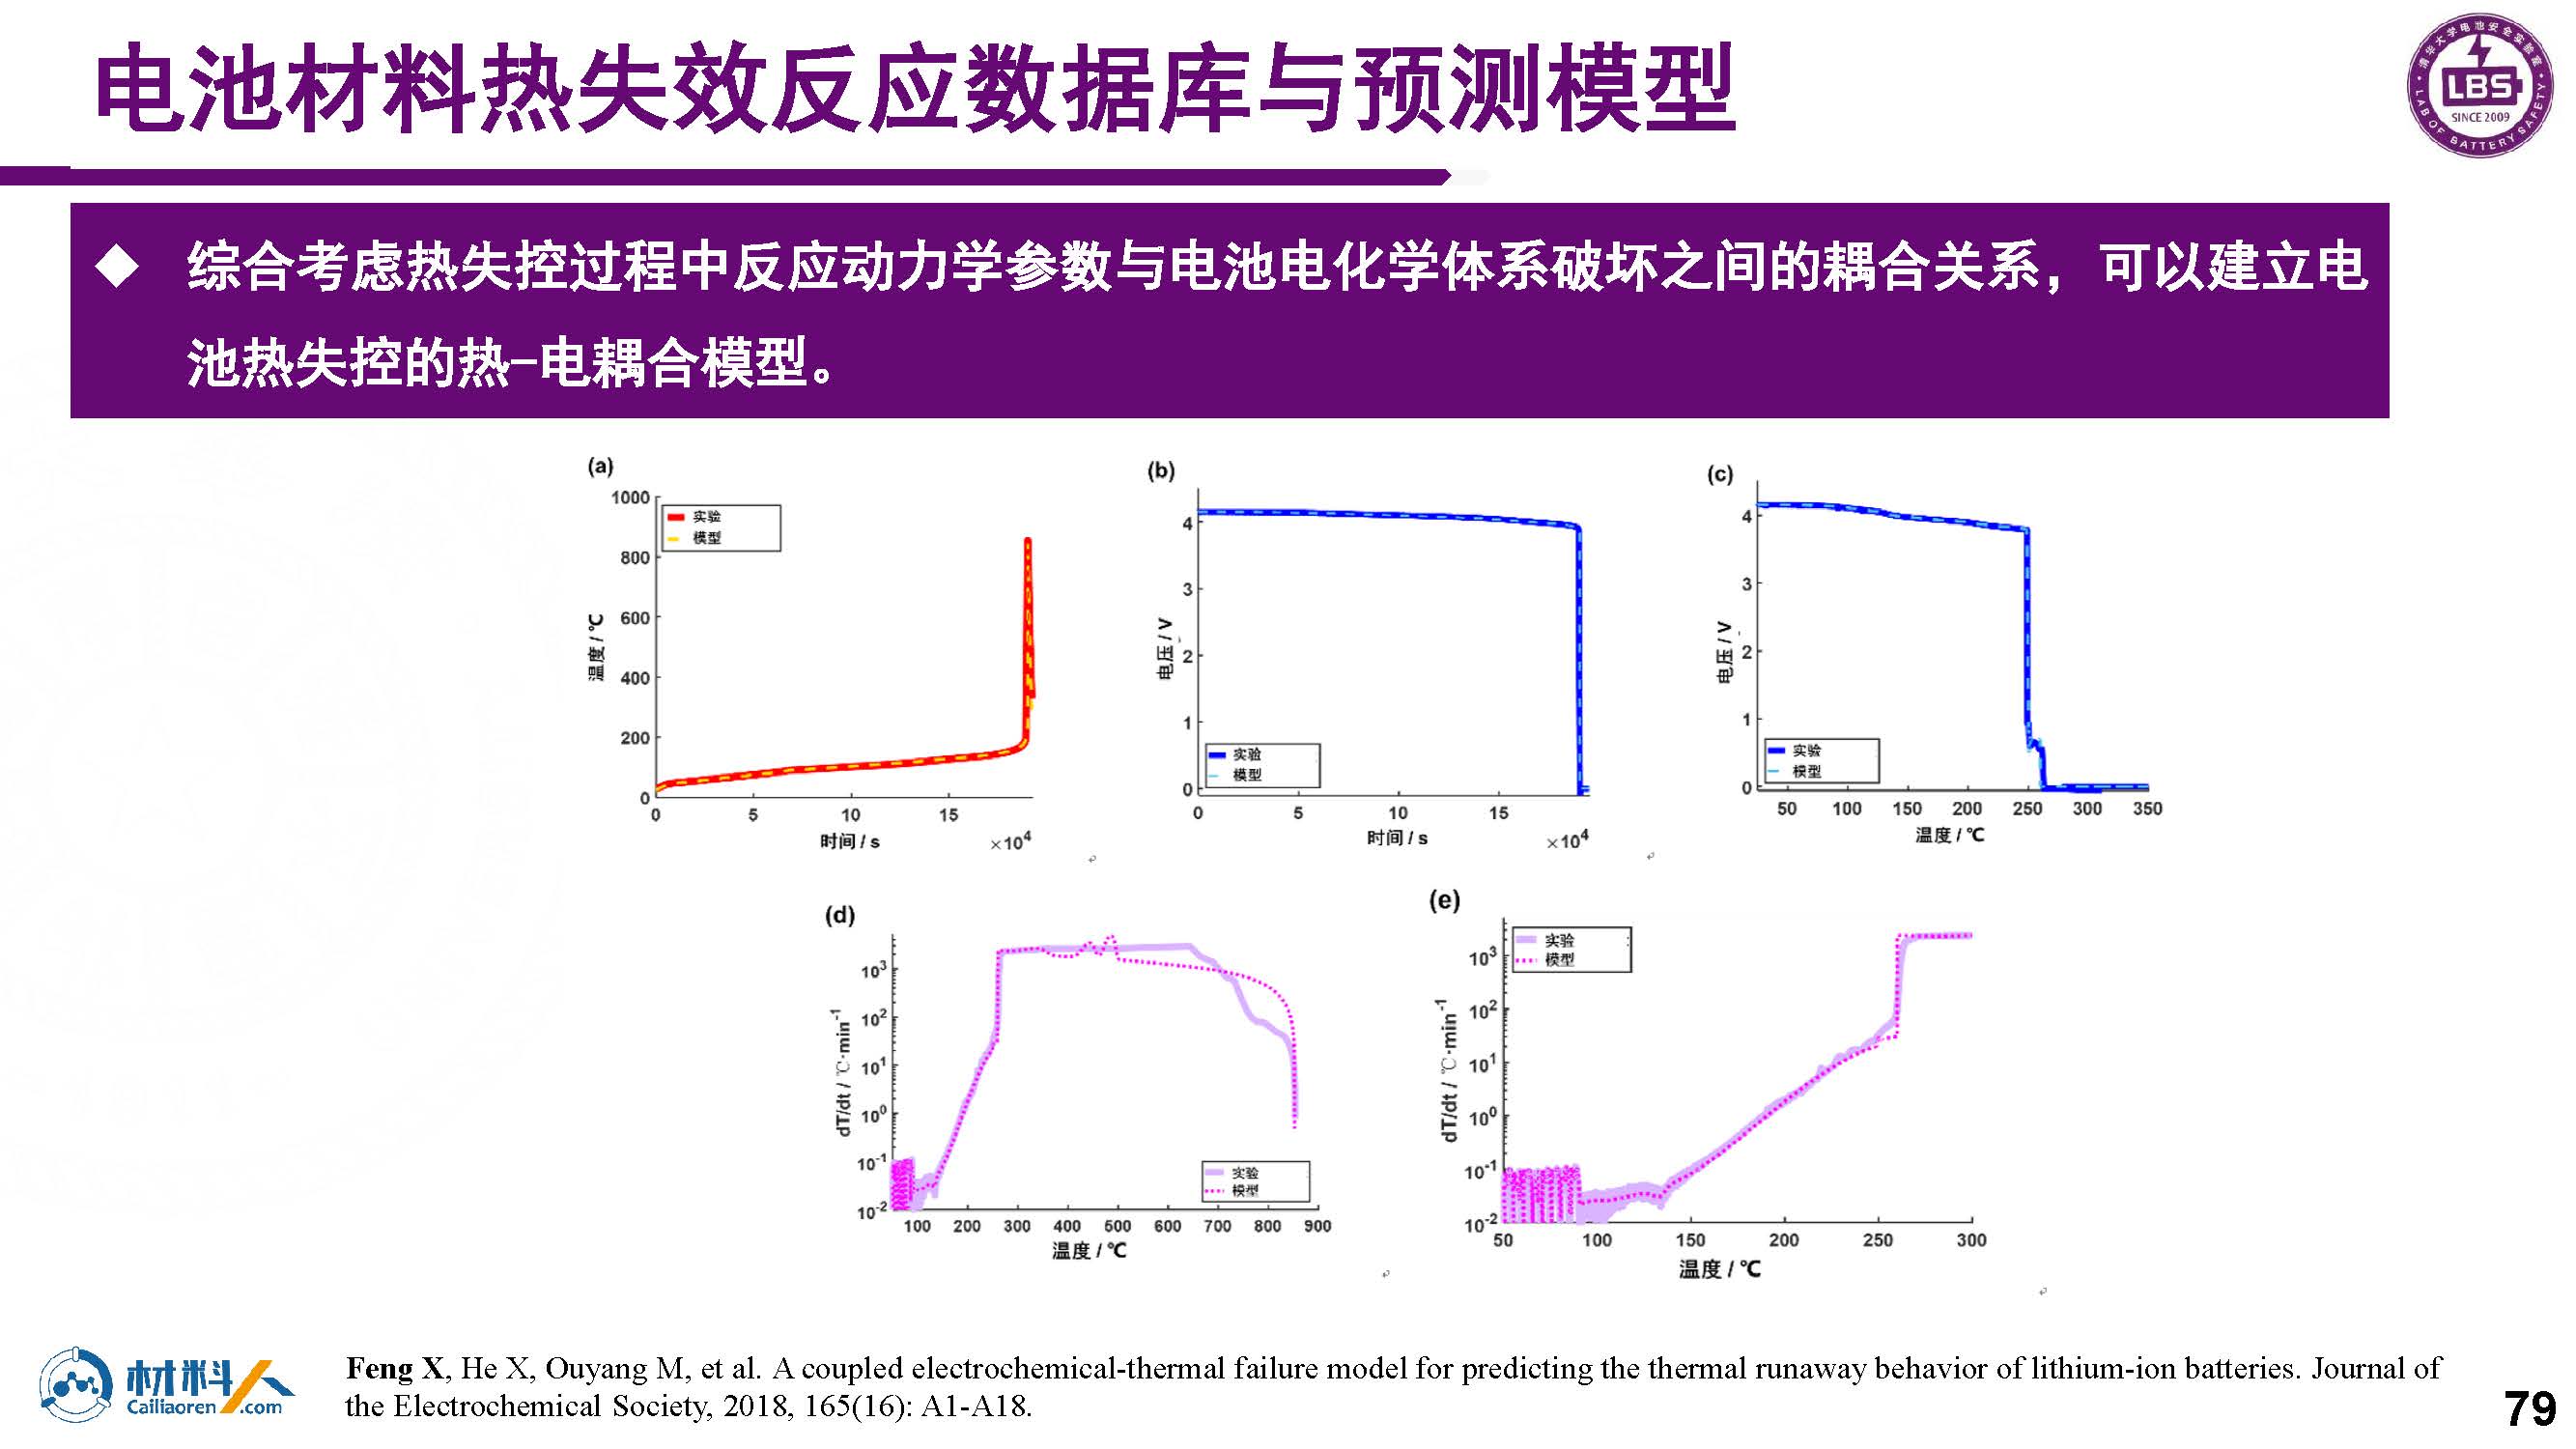 锂离子电池热失效测试、表征与建模_20210819_页面_75.jpg